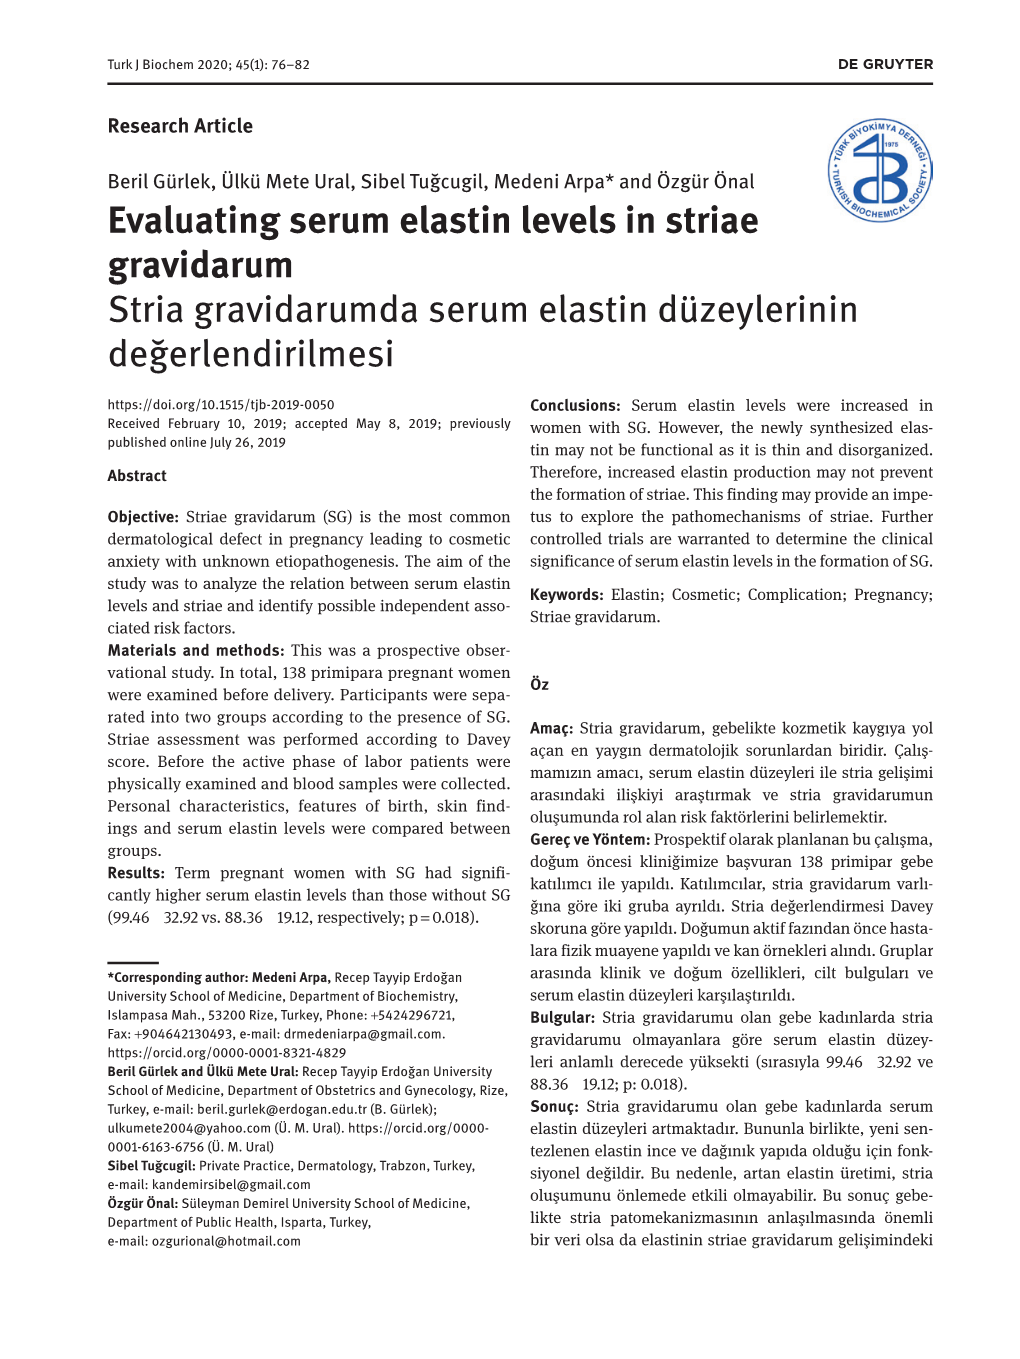 Evaluating Serum Elastin Levels in Striae Gravidarum Stria